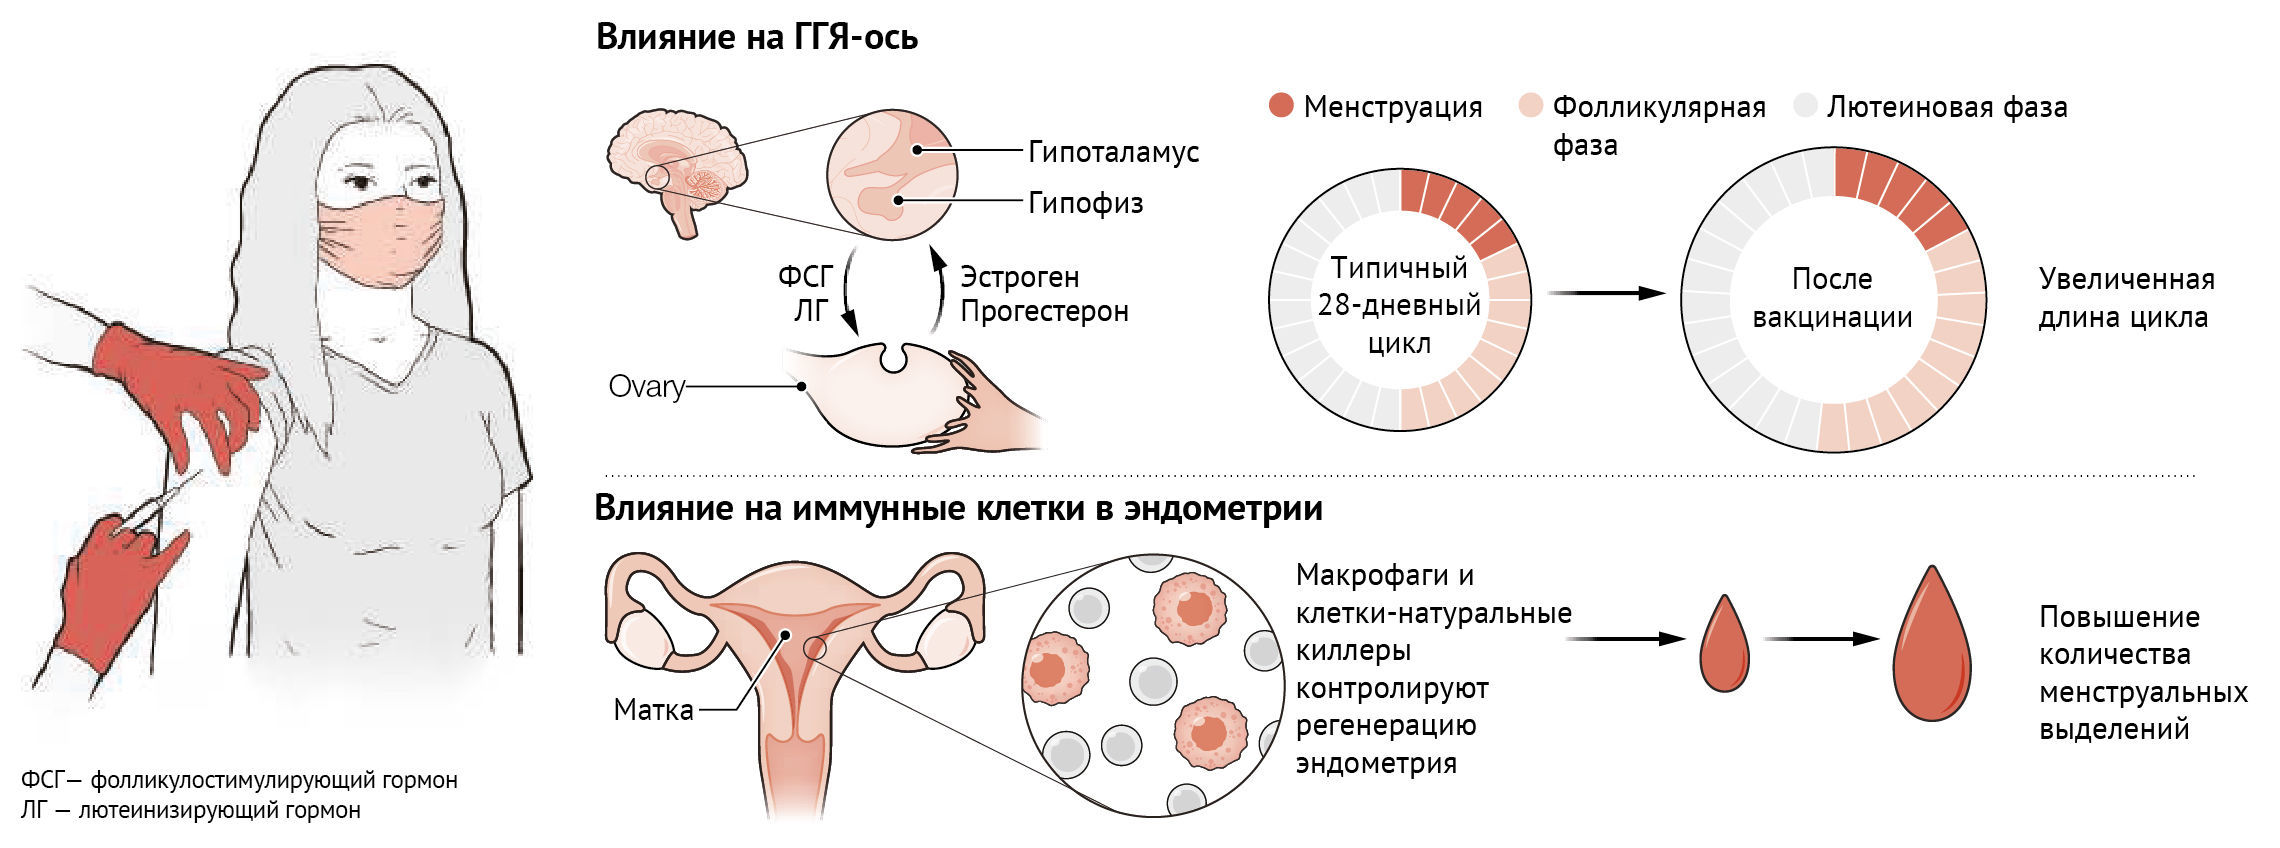 сперма влияет на женское здоровье фото 50